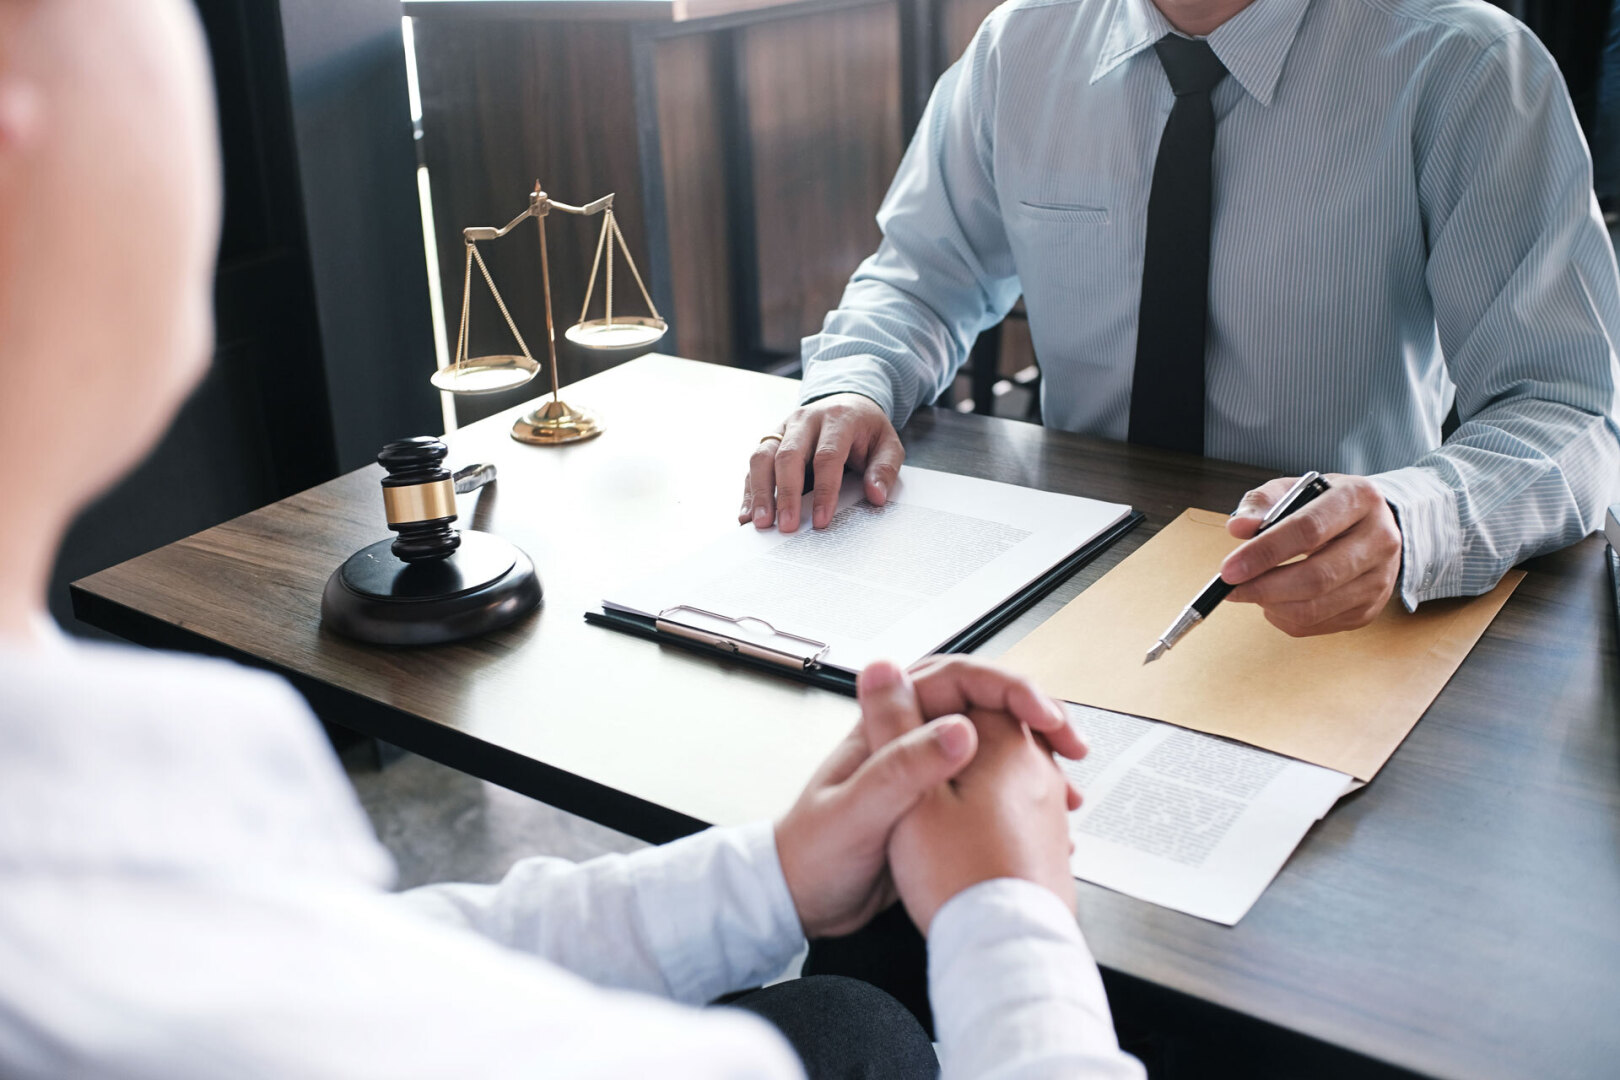 6690497 Юридические услуги - эффективная помощь бизнесу в решении арбитражных споров